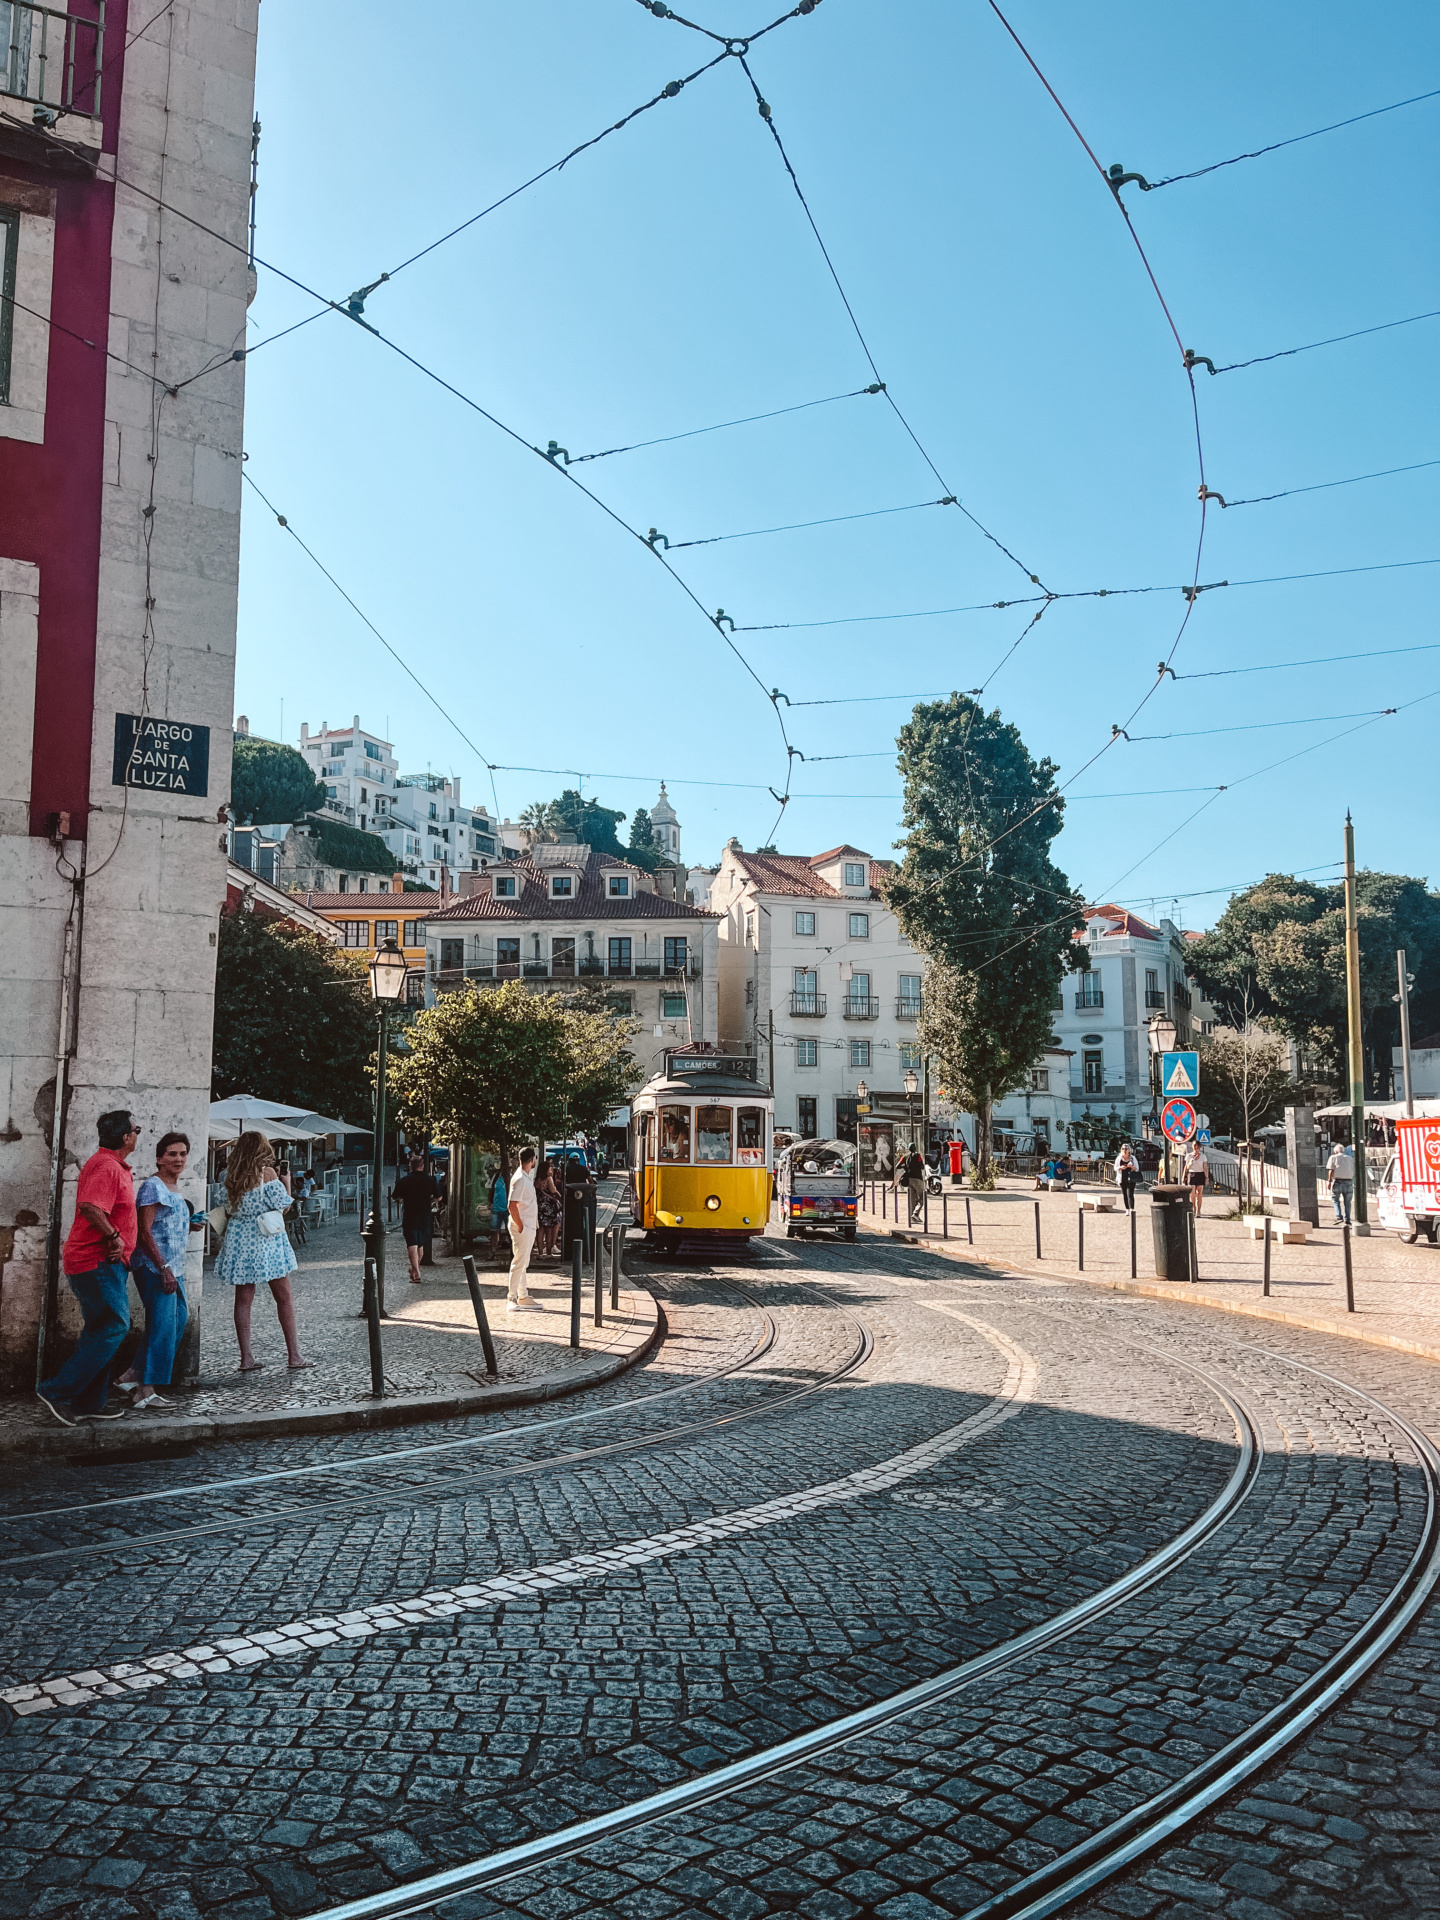 WanderlustBee- Lisbon June 23